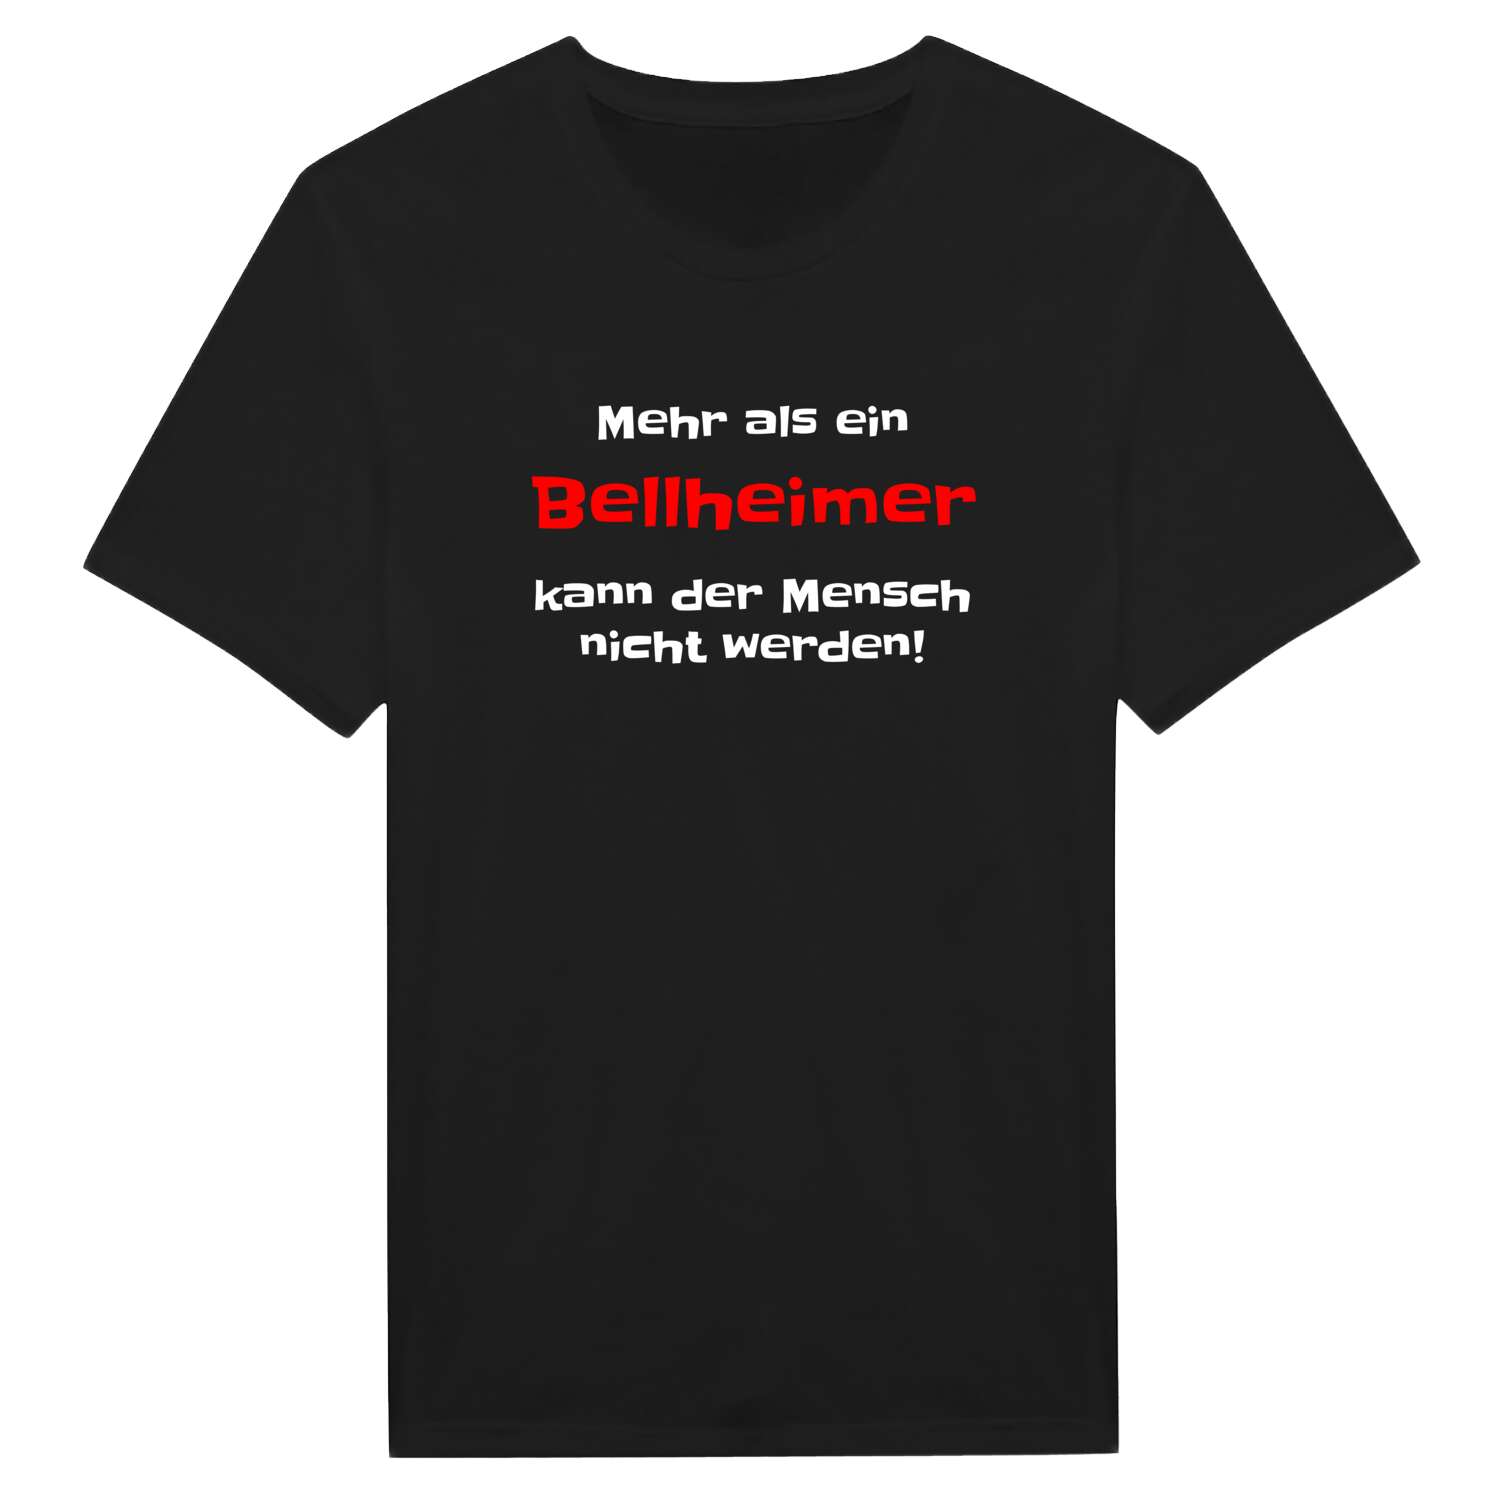 Bellheim T-Shirt »Mehr als ein«